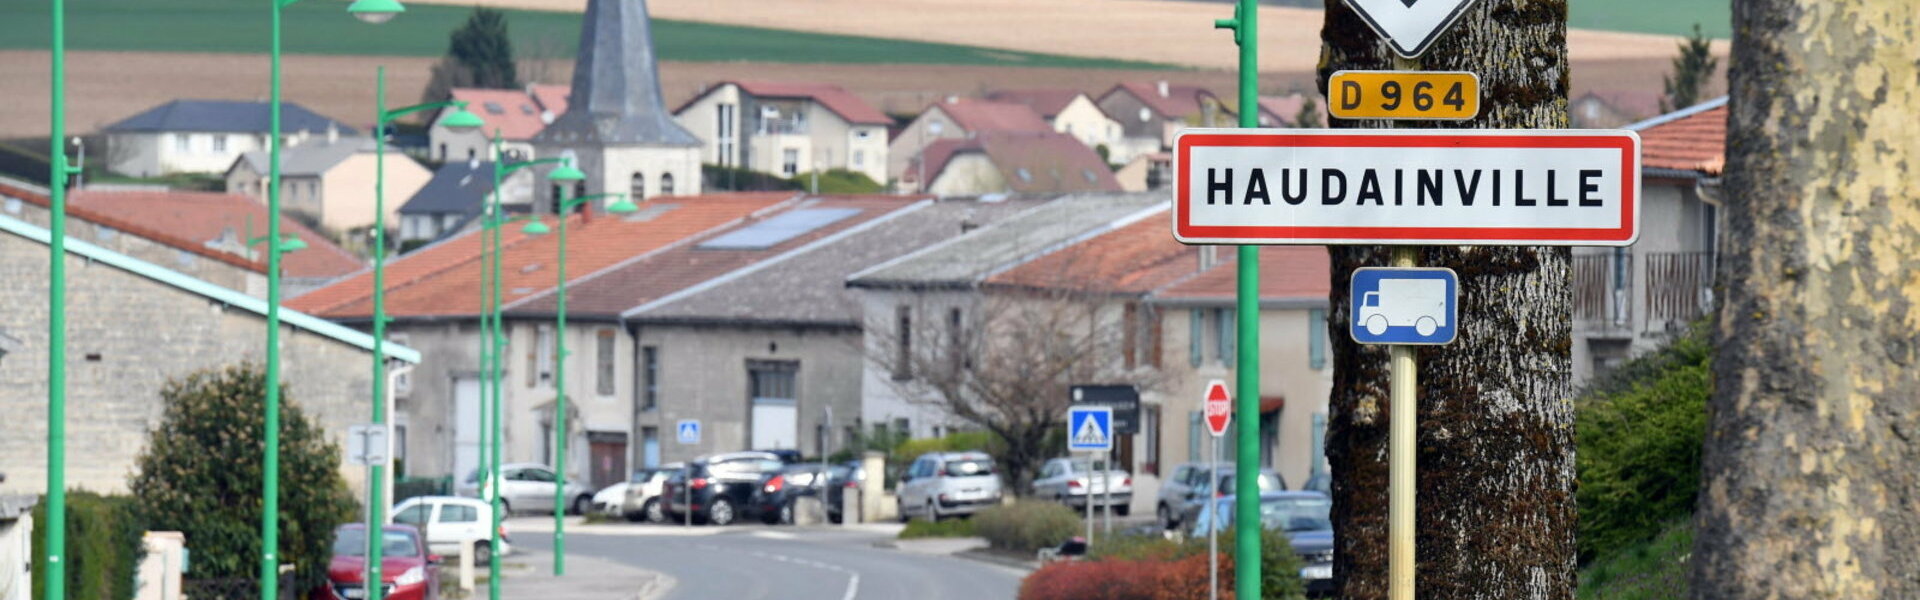 Site officiel de la commune d'Haudainville